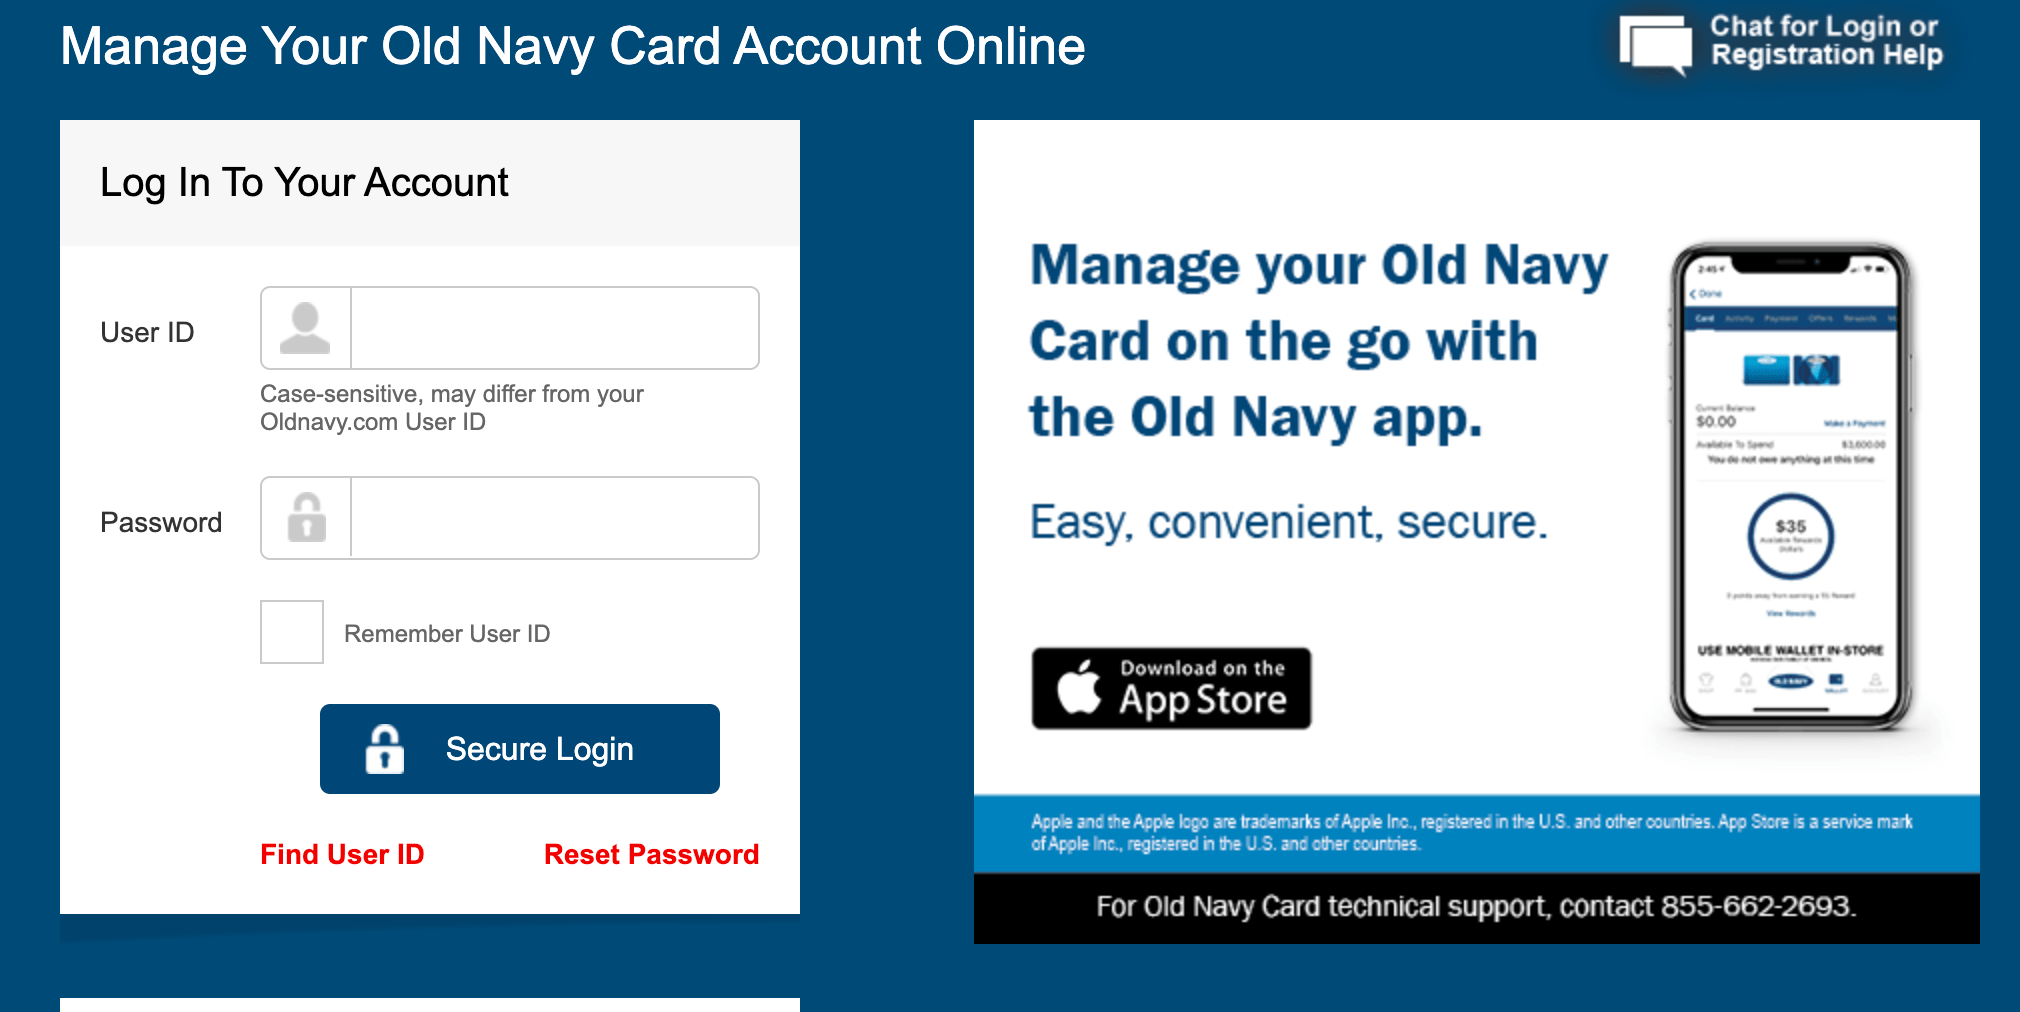 Old Navy Credit Card Login, Activation & Pay Bills Online At www.oldnavy.com